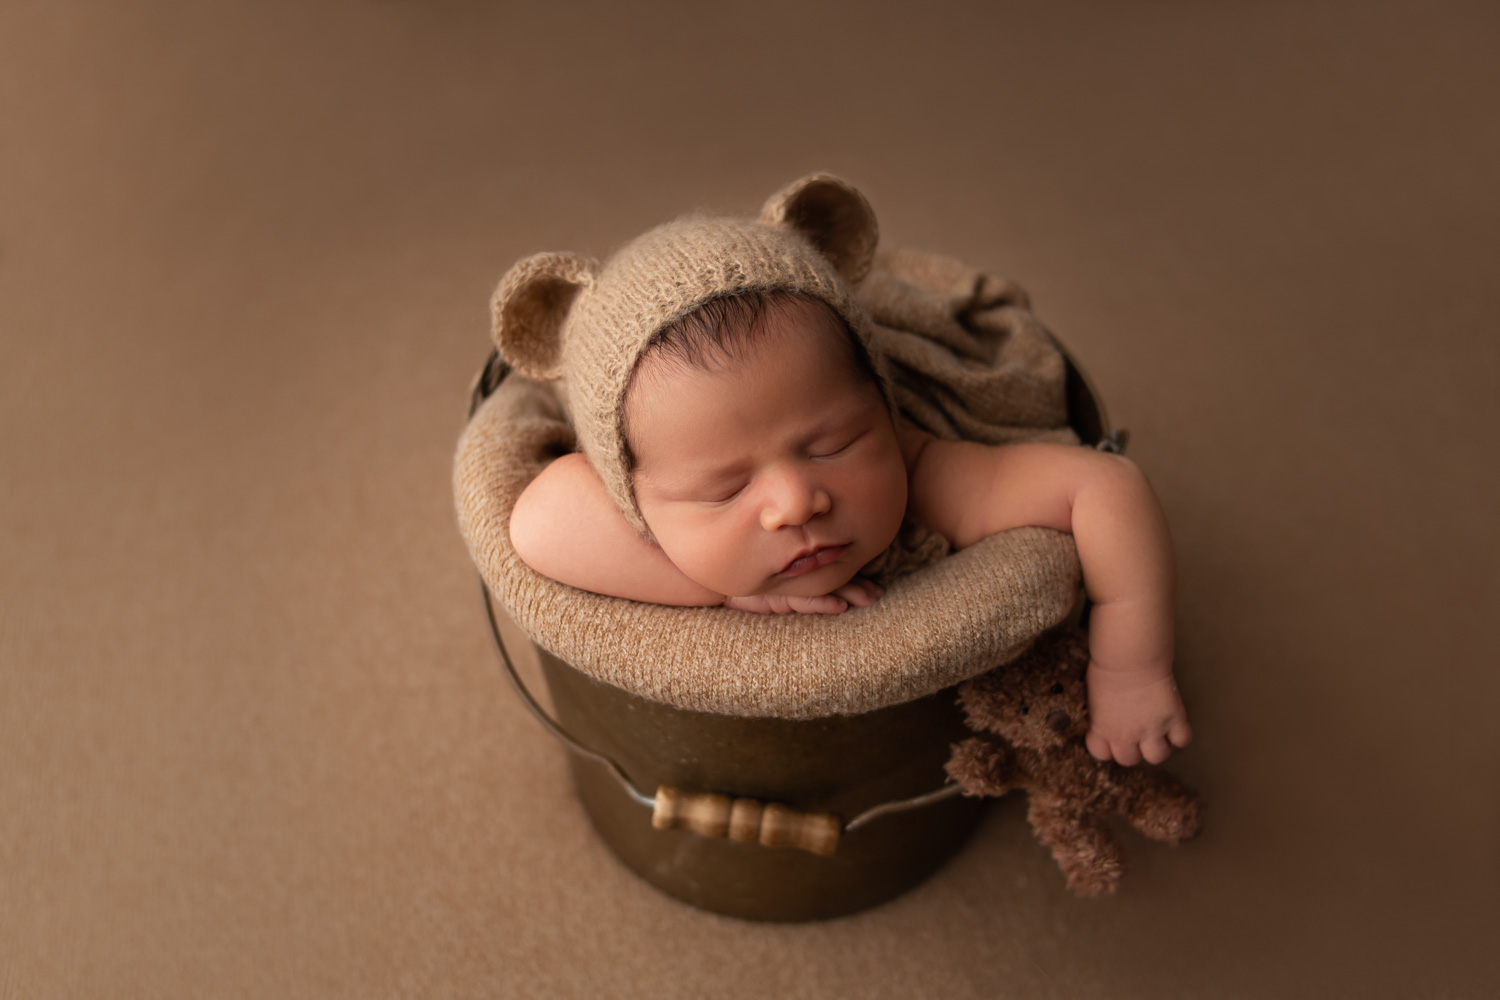 baby boy in bucket holding teddy bear in hollywood, fl